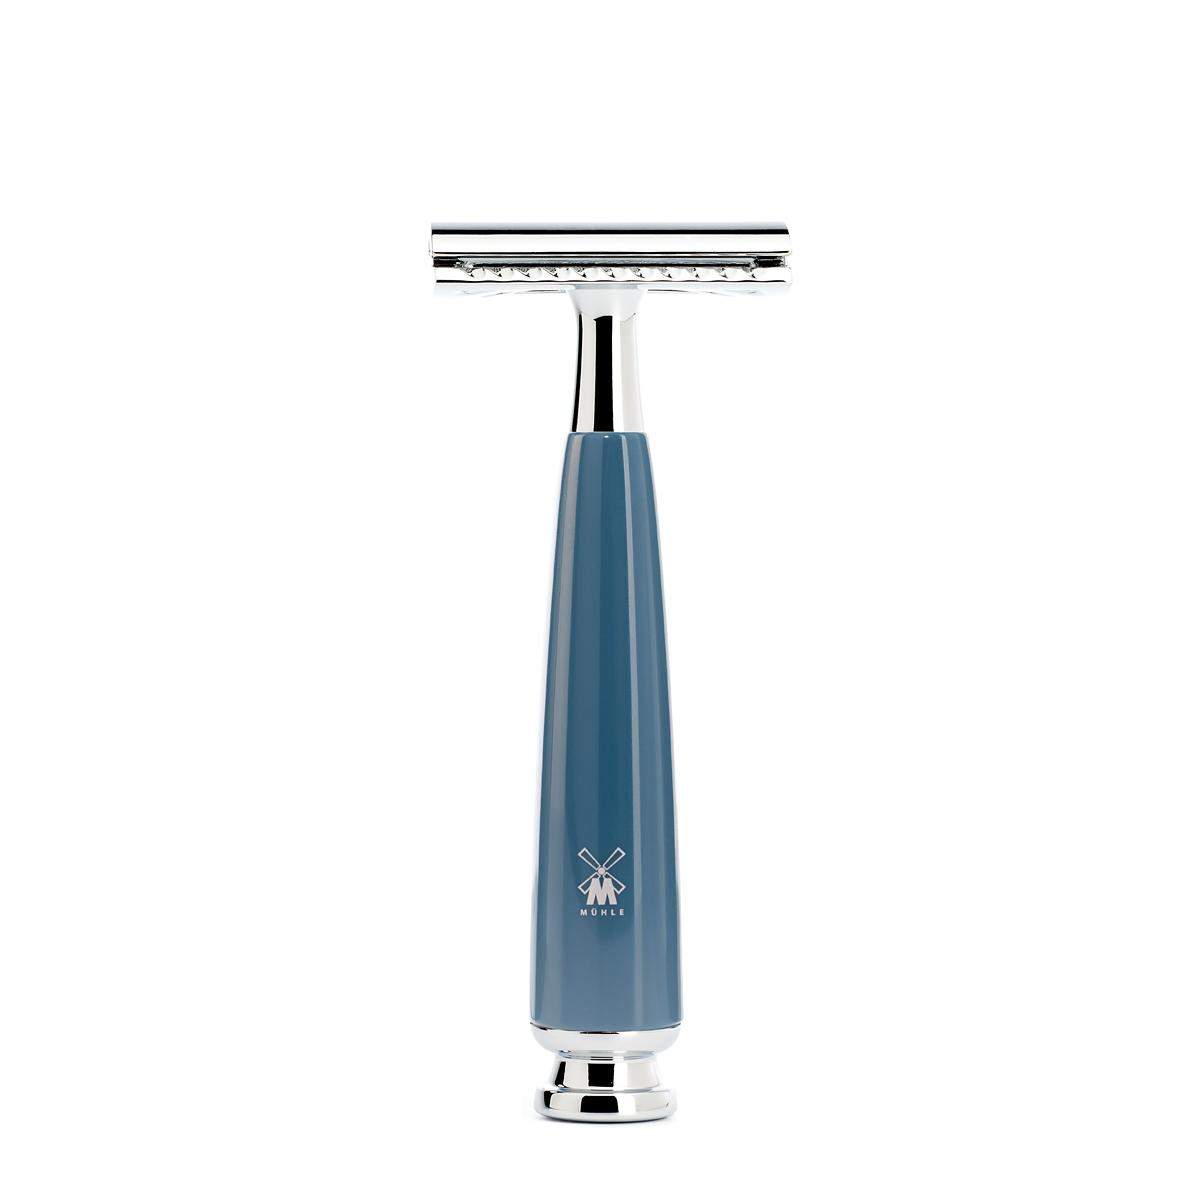 Mühle rytmo azul gasolina 3 unid. conjunto de barbear de texugo puro / aparelho de barbear